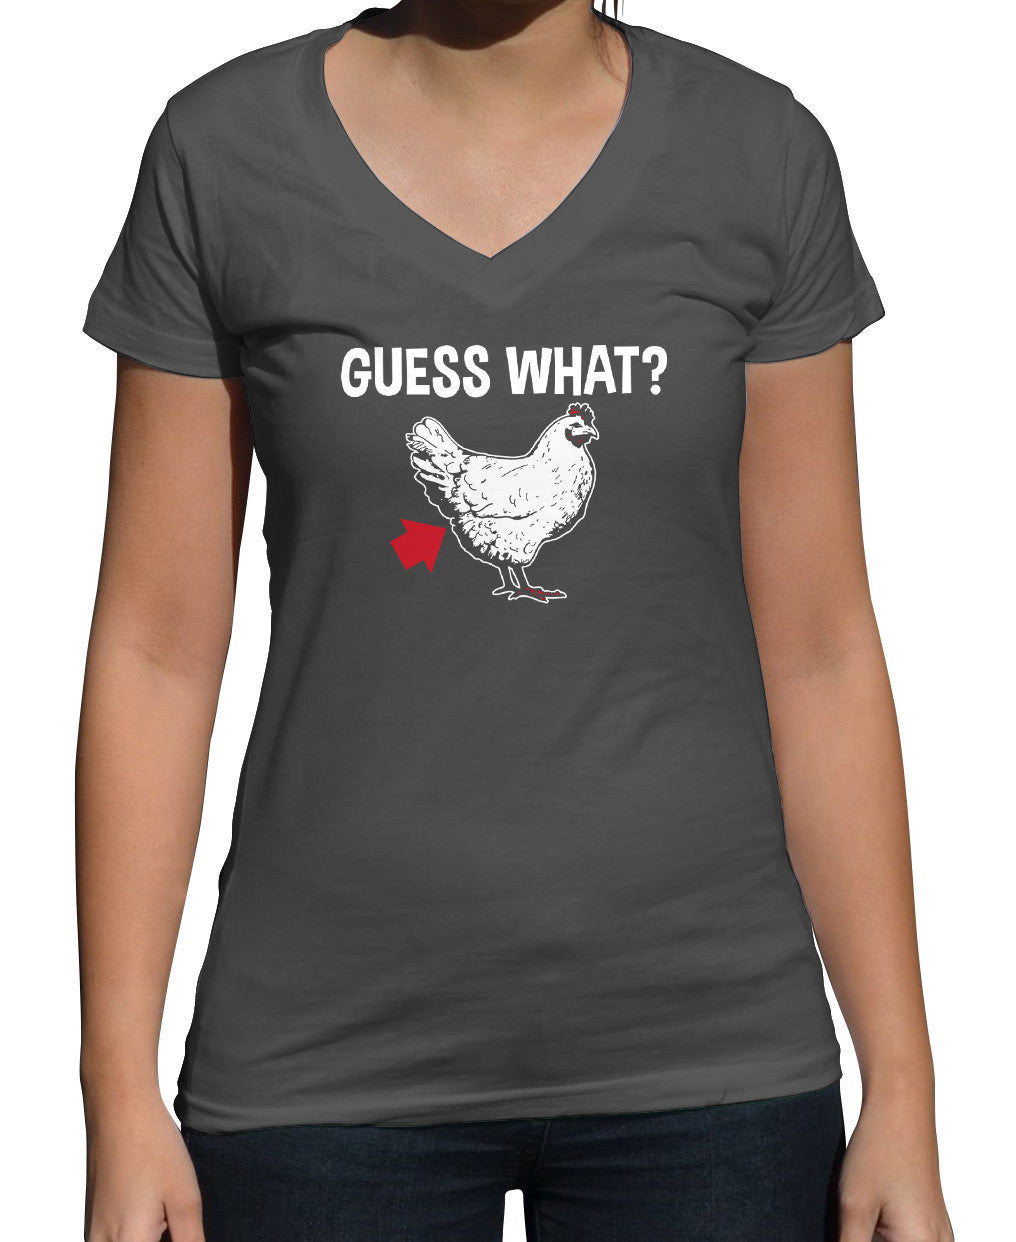 Women's Guess What Chicken Butt Vneck T-Shirt